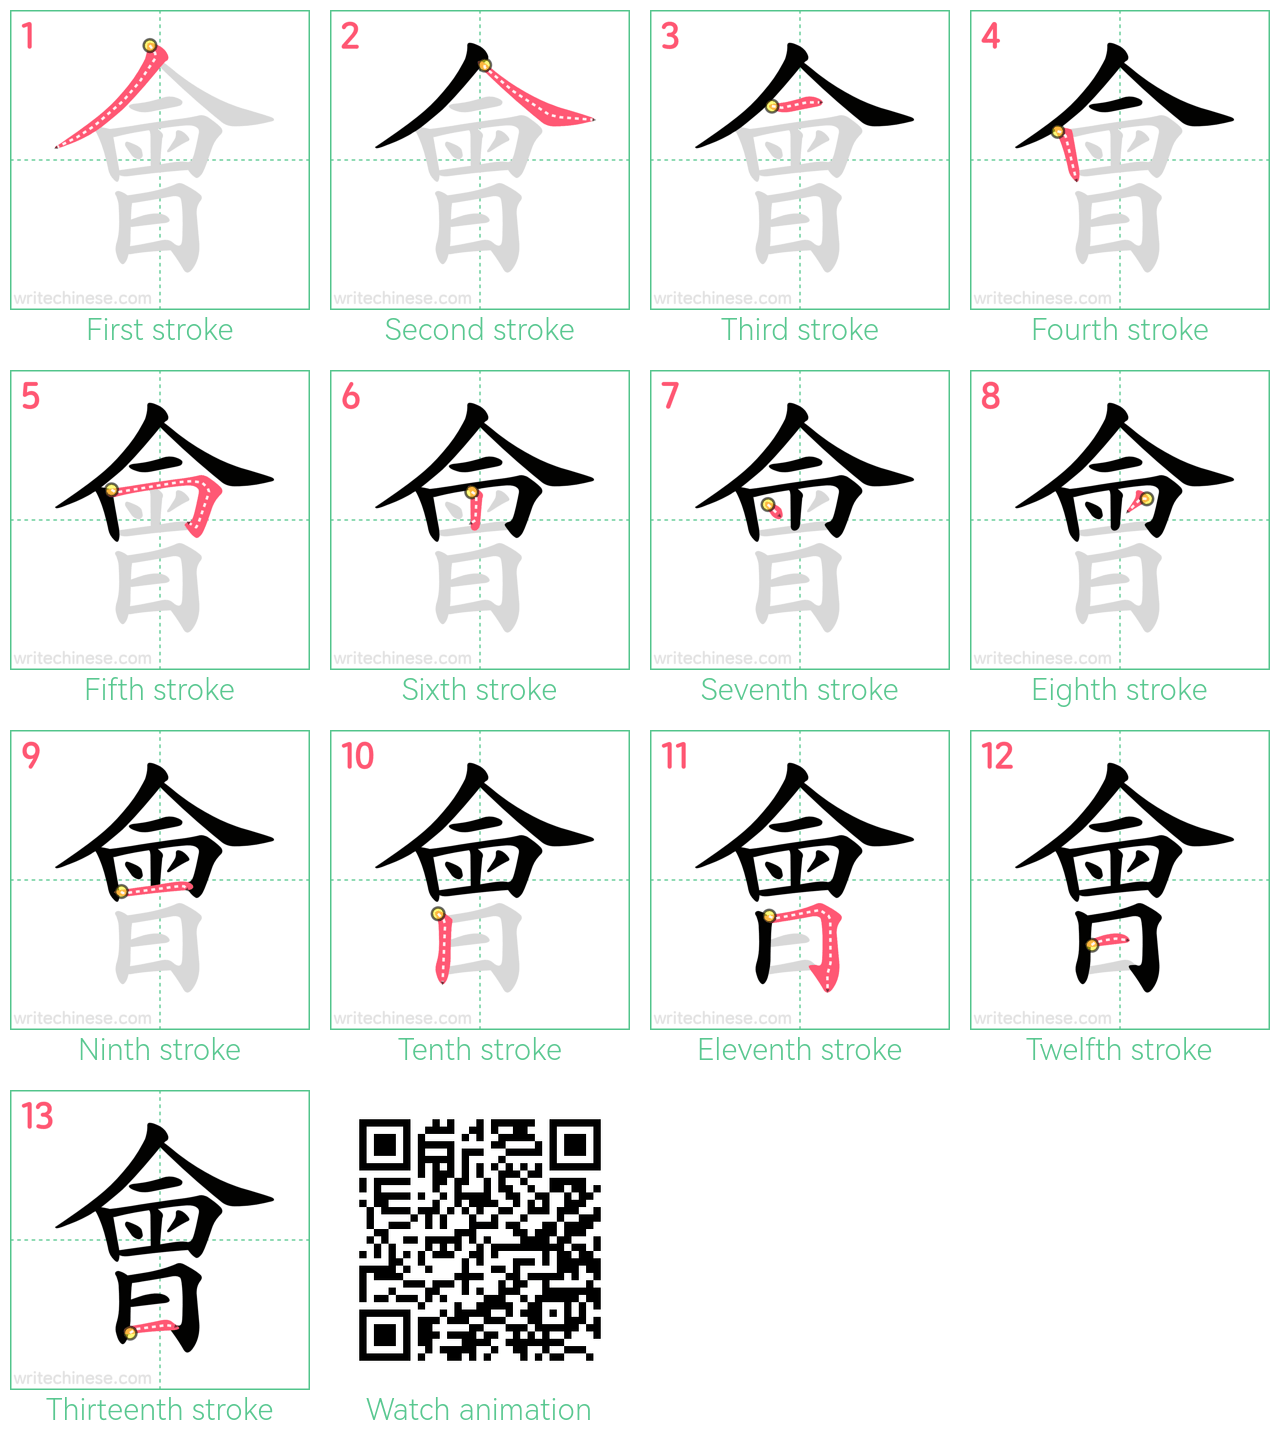 會 step-by-step stroke order diagrams